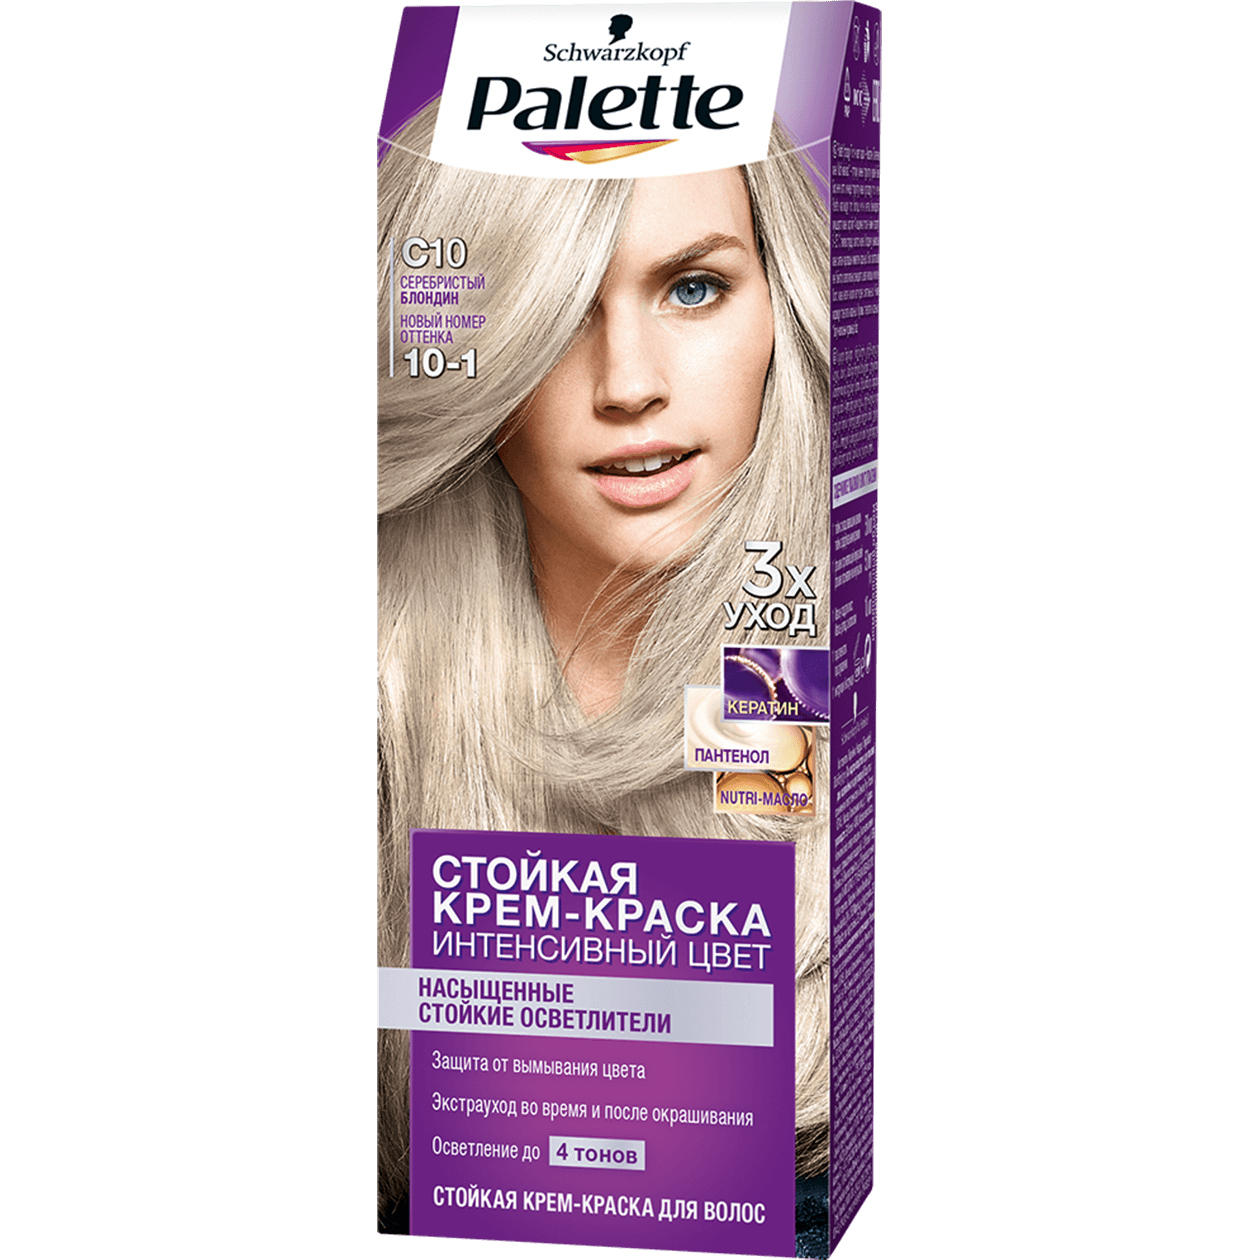 Крем-краска для волос Palette Интенсивный цвет 10-1, C10 Серебристый блондин 110 мл крем краска для волос rowena soft silk тон 3 3 горький шоколад